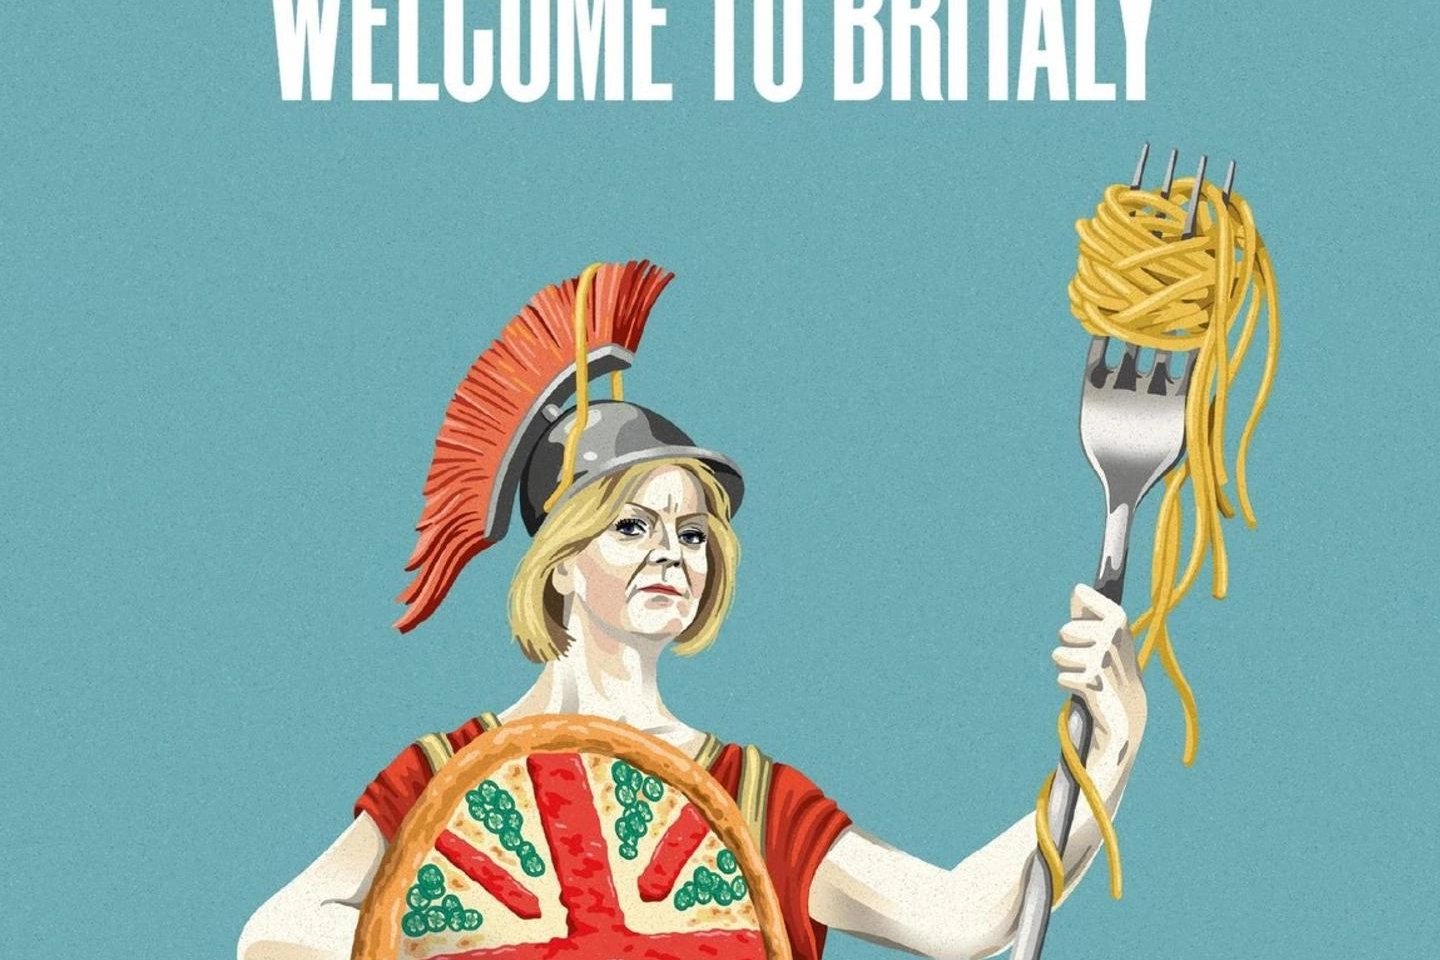 La copertina dell’Economist ritrae Liz Truss con pizza e spaghetti